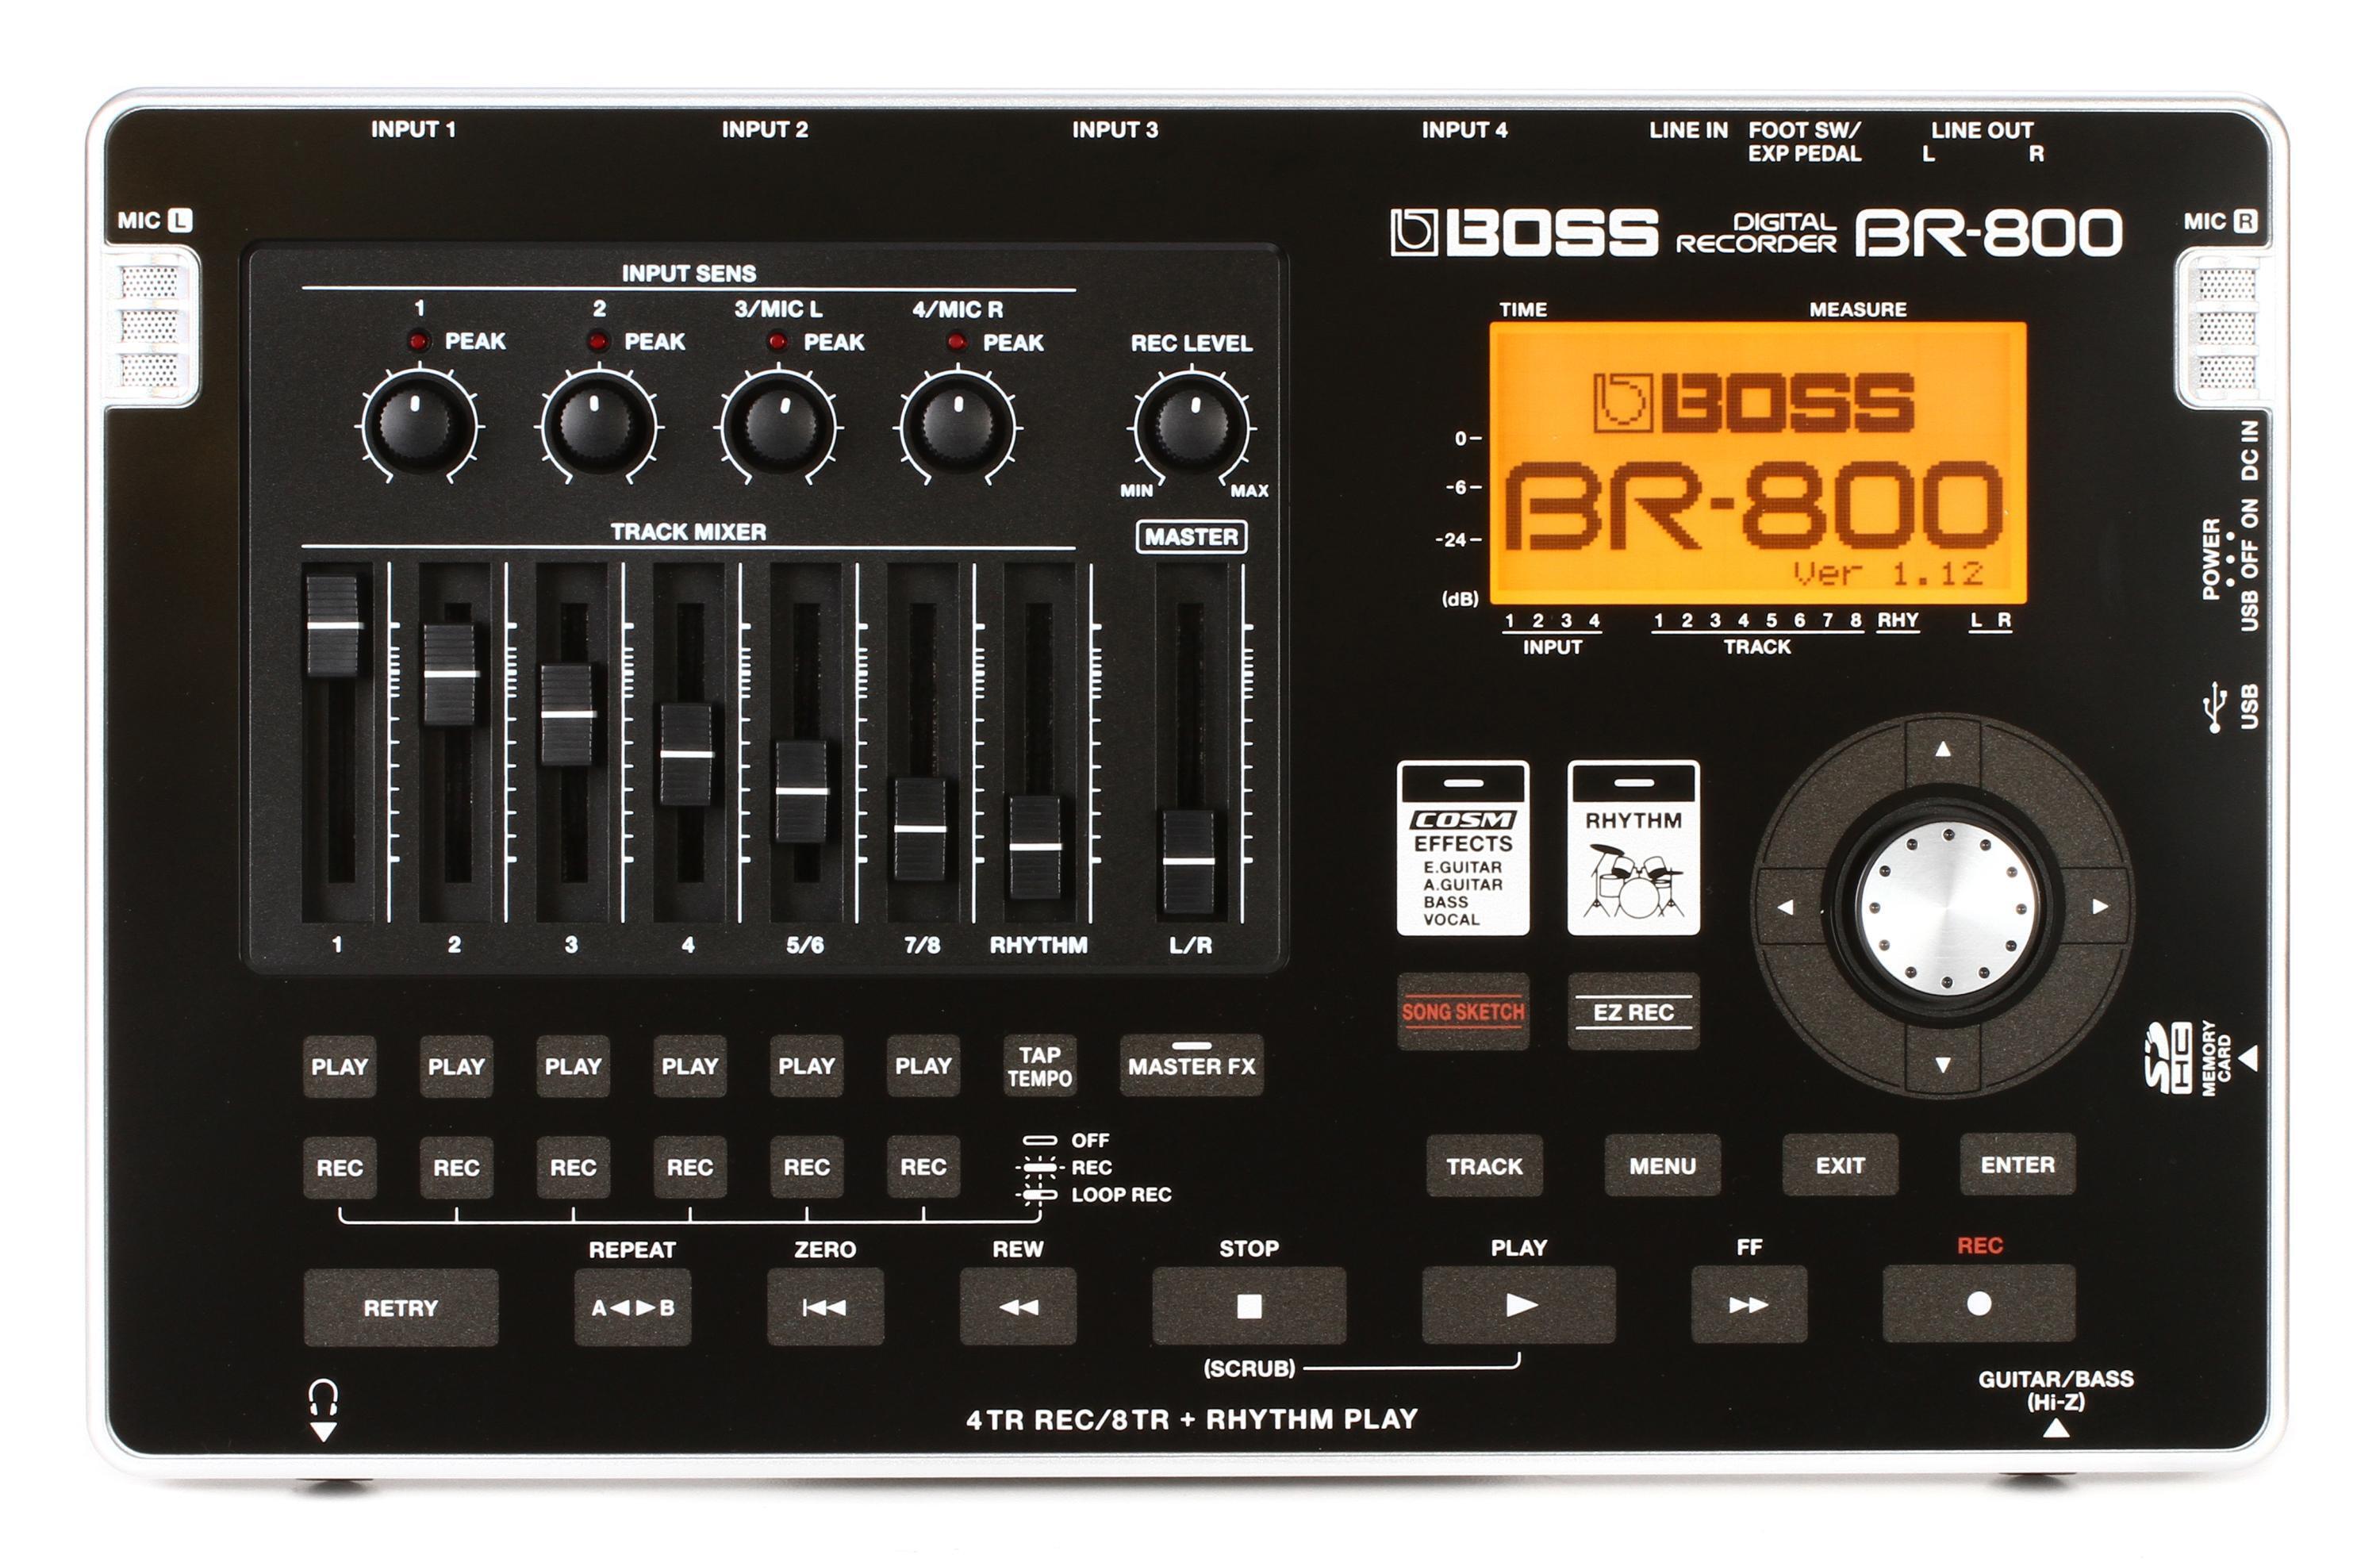 BOSS BR-800